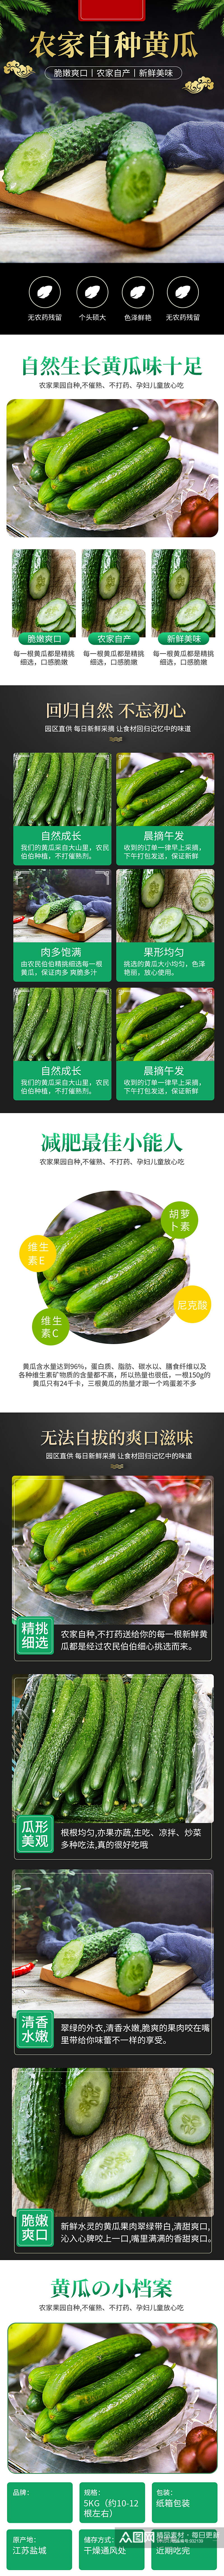 天猫中国风绿黄瓜蔬菜详情页素材